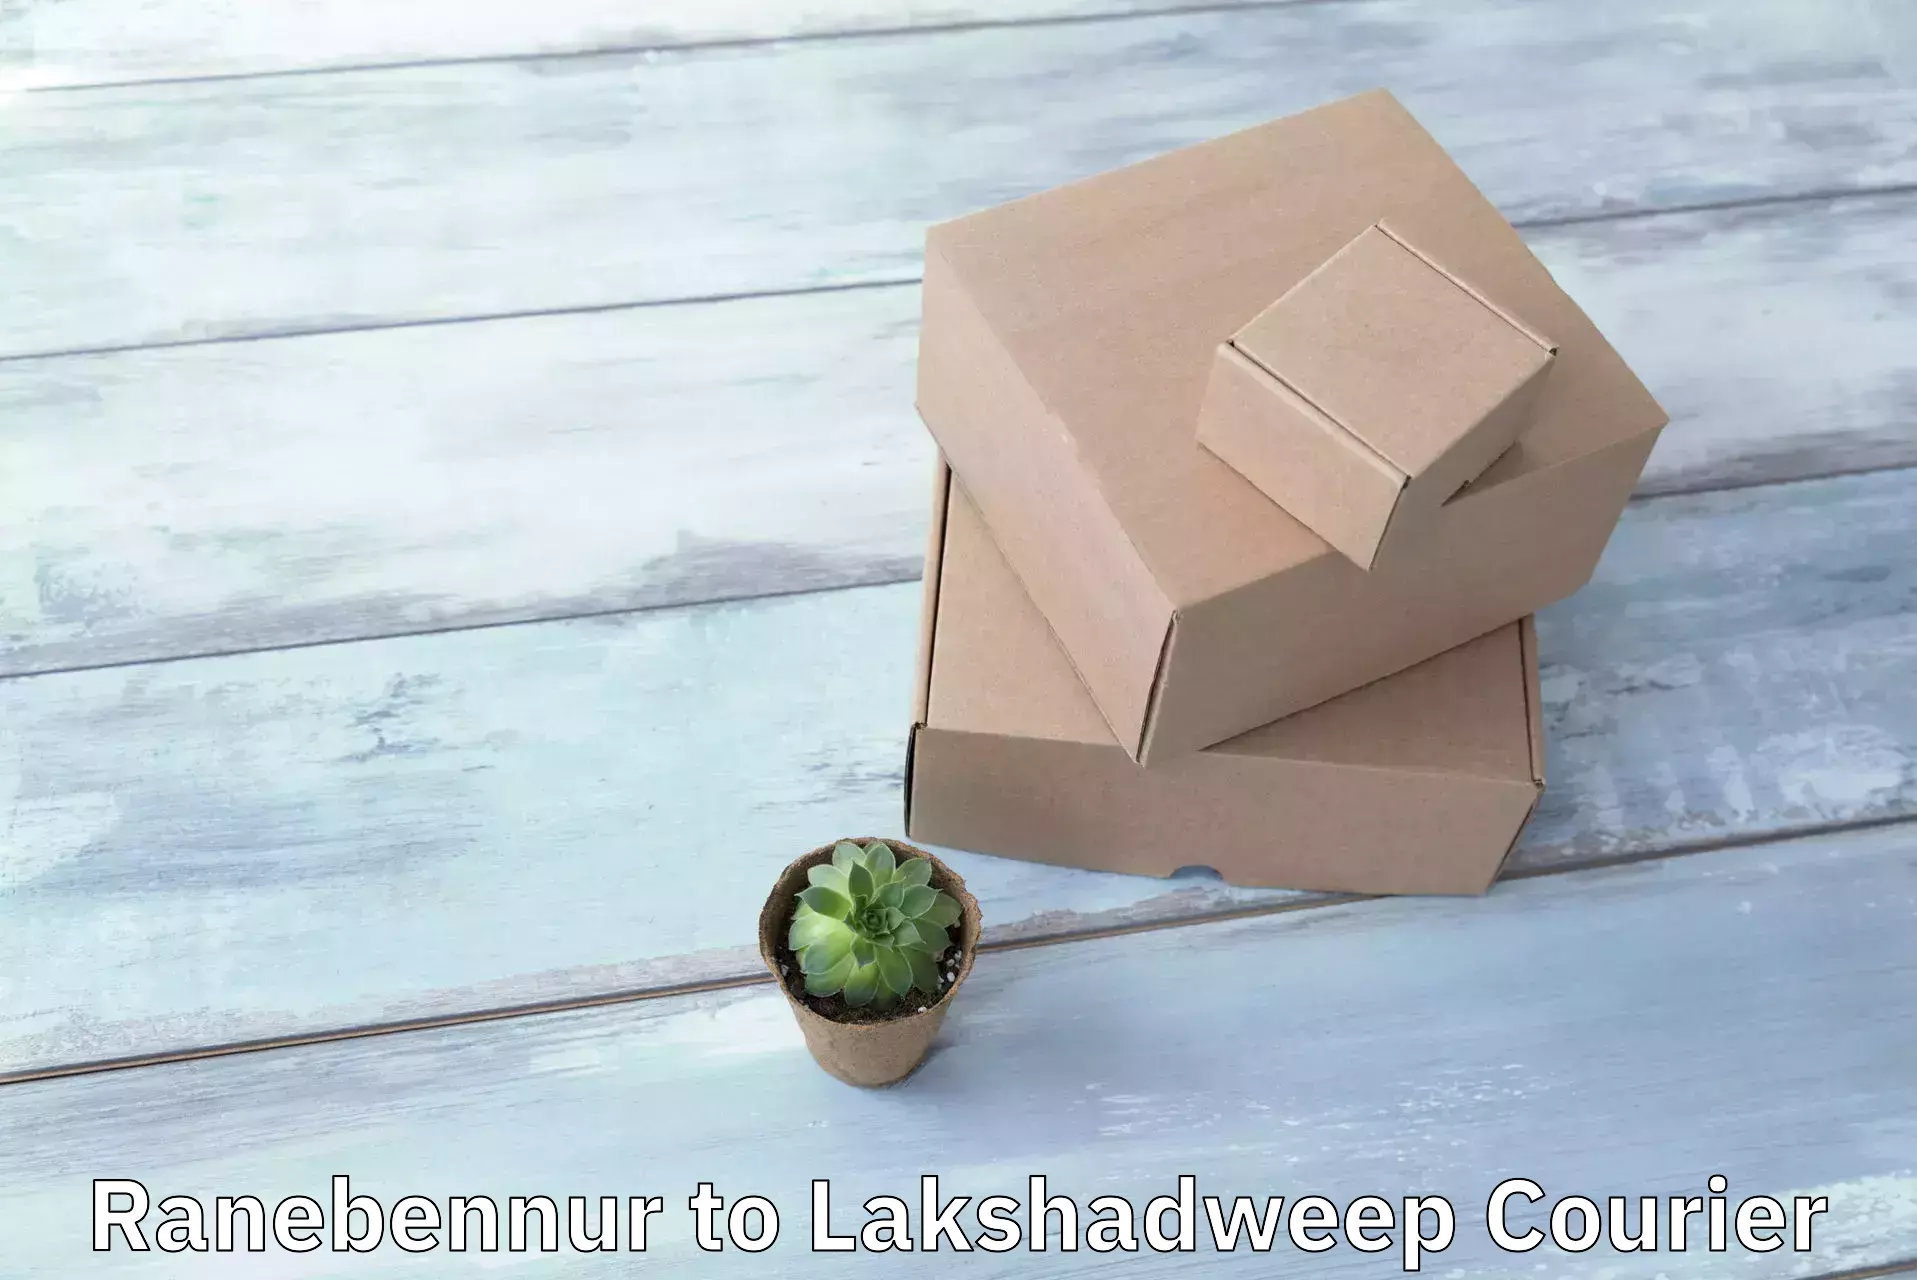 Premium courier solutions Ranebennur to Lakshadweep